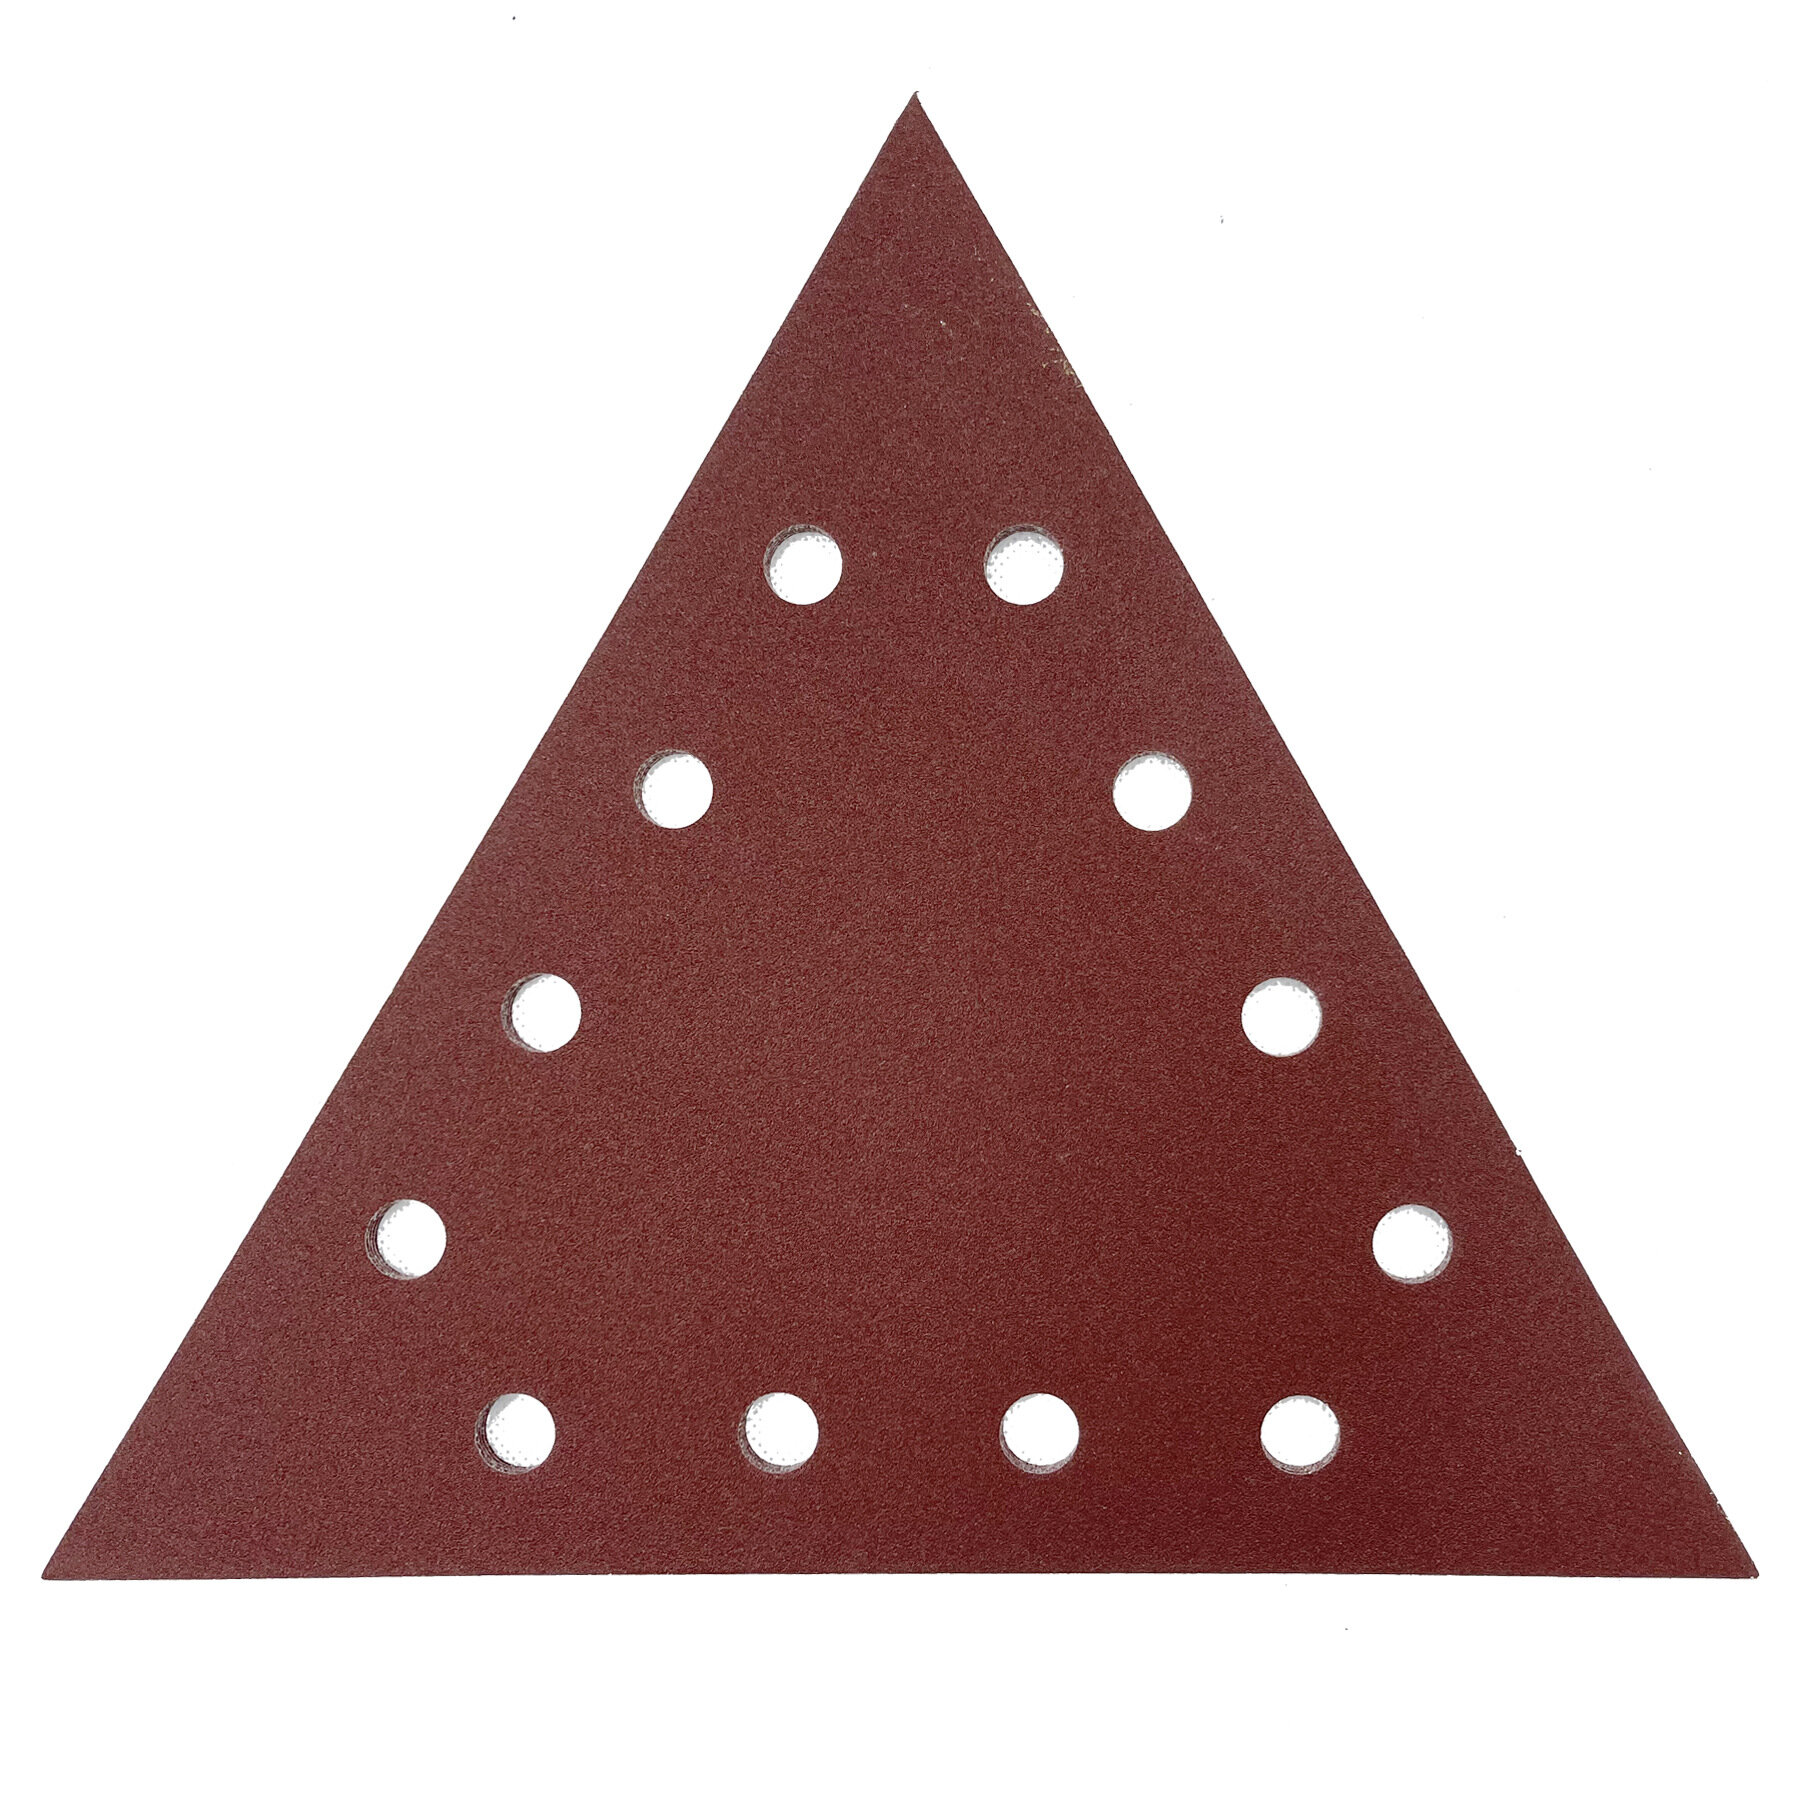 Шлифовальная бумага треугольная 285мм, Шлифбумага для жирафа Р 400, 10 шт